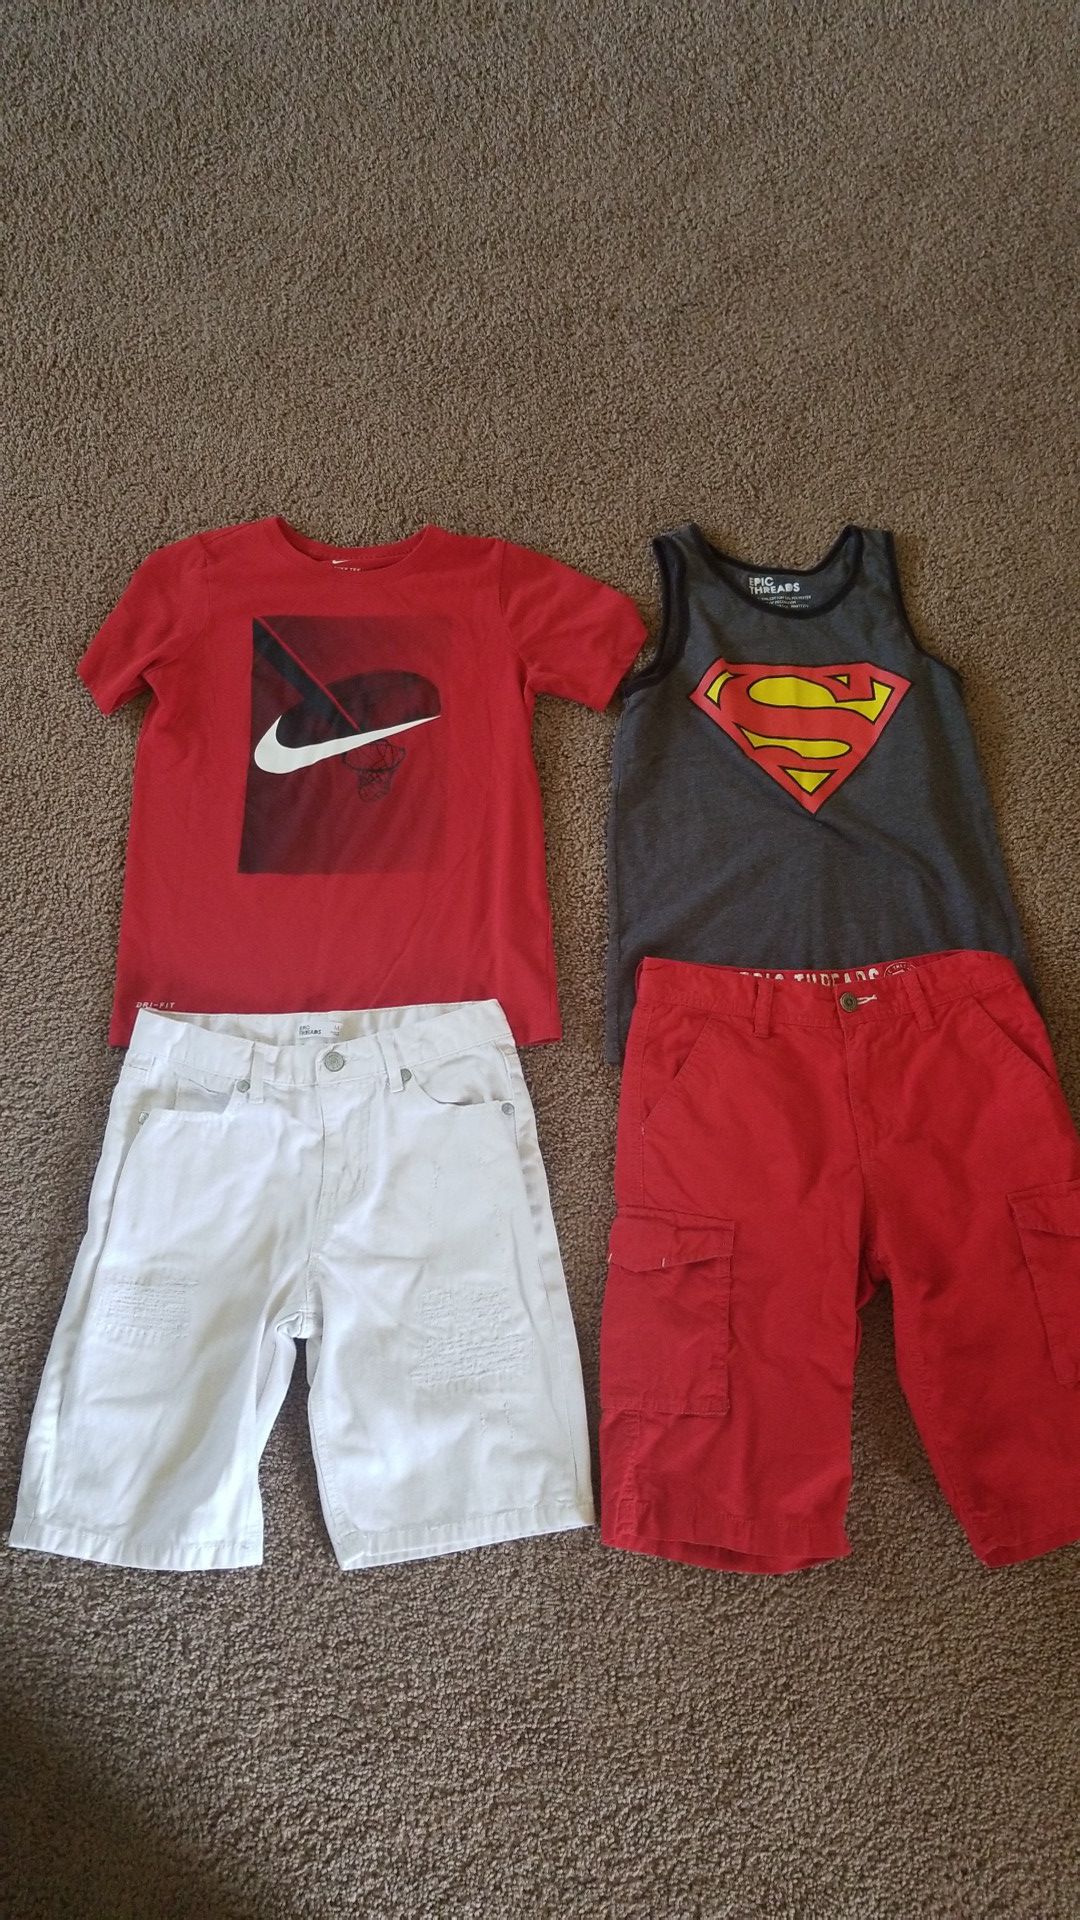 Kids clothes size medium 10 (boys)